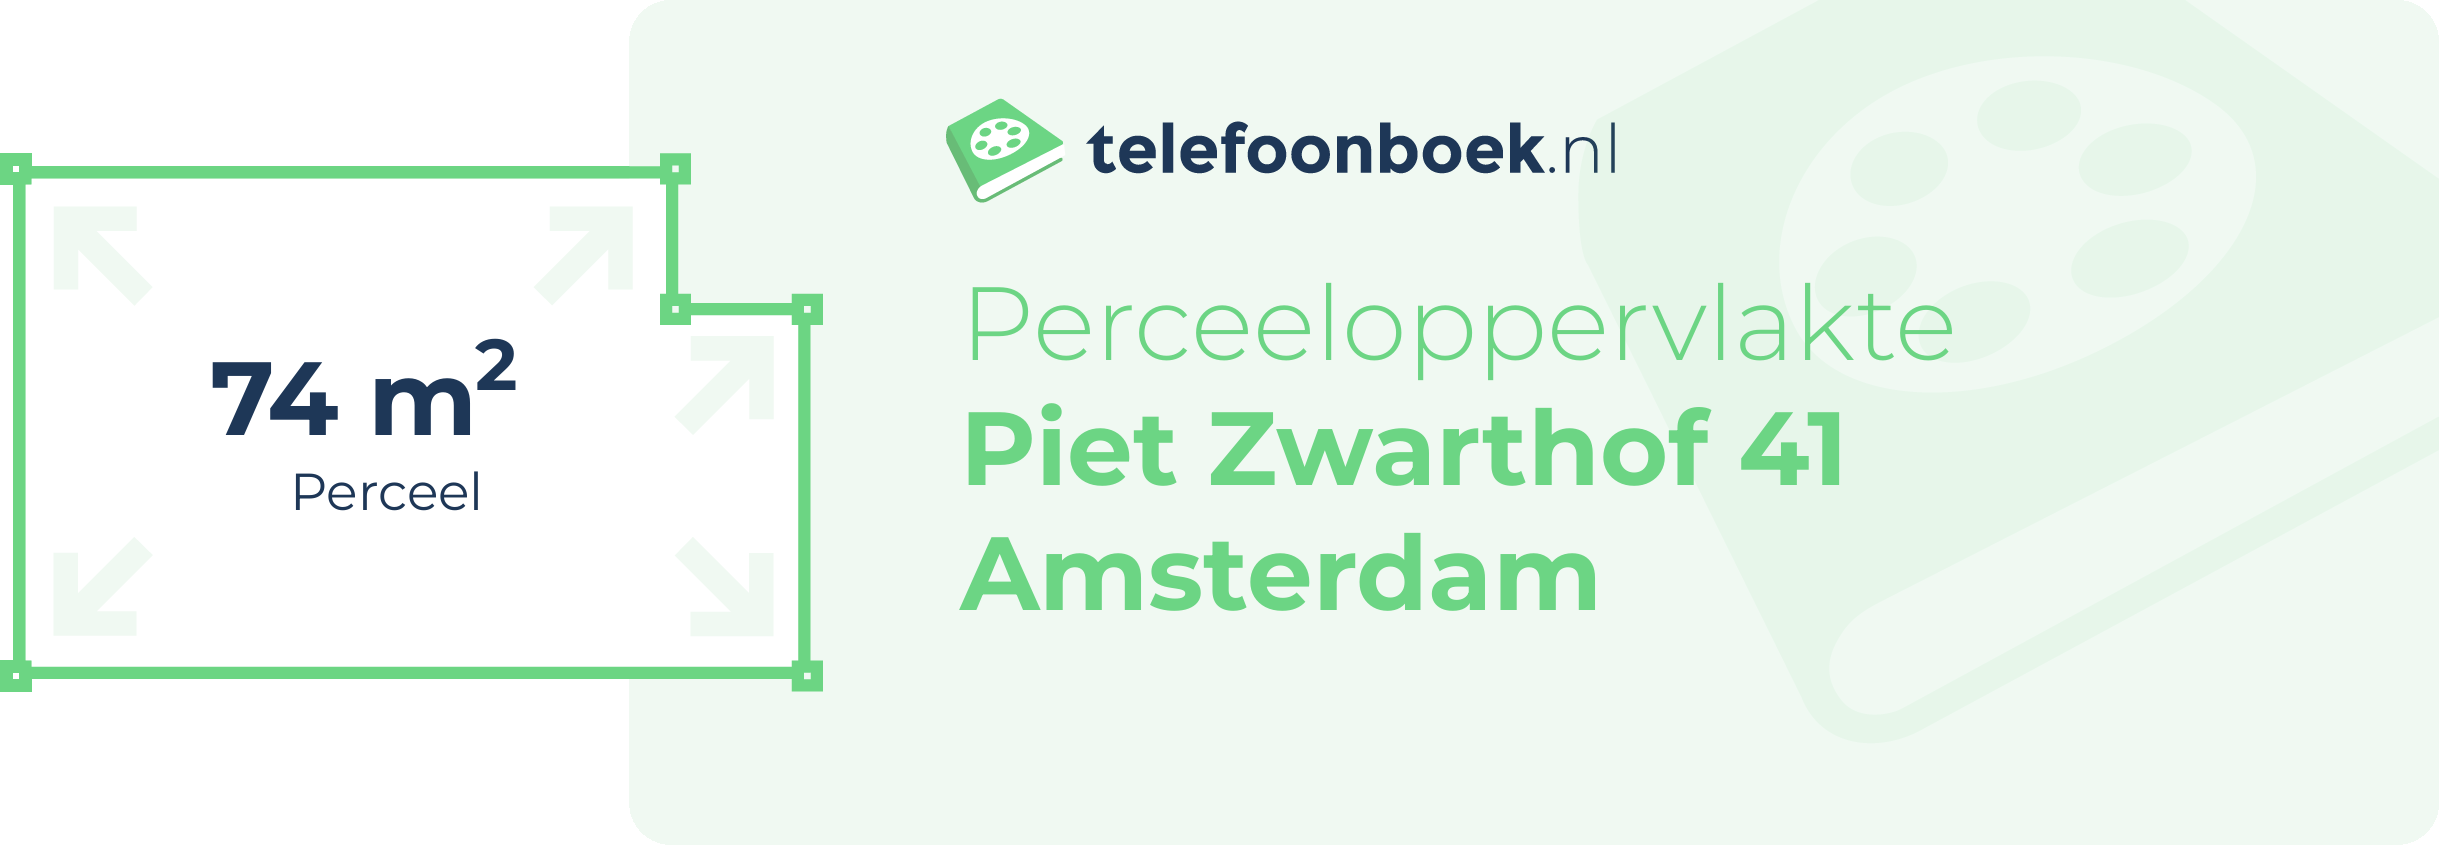 Perceeloppervlakte Piet Zwarthof 41 Amsterdam